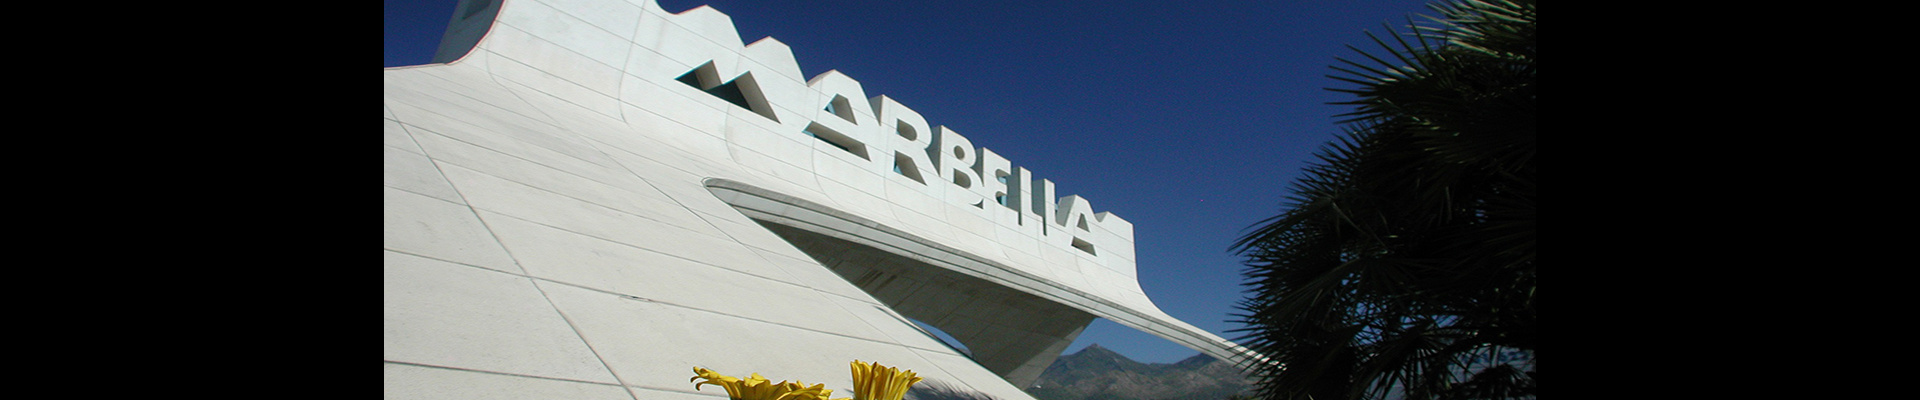 Discover...<br/>Marbella